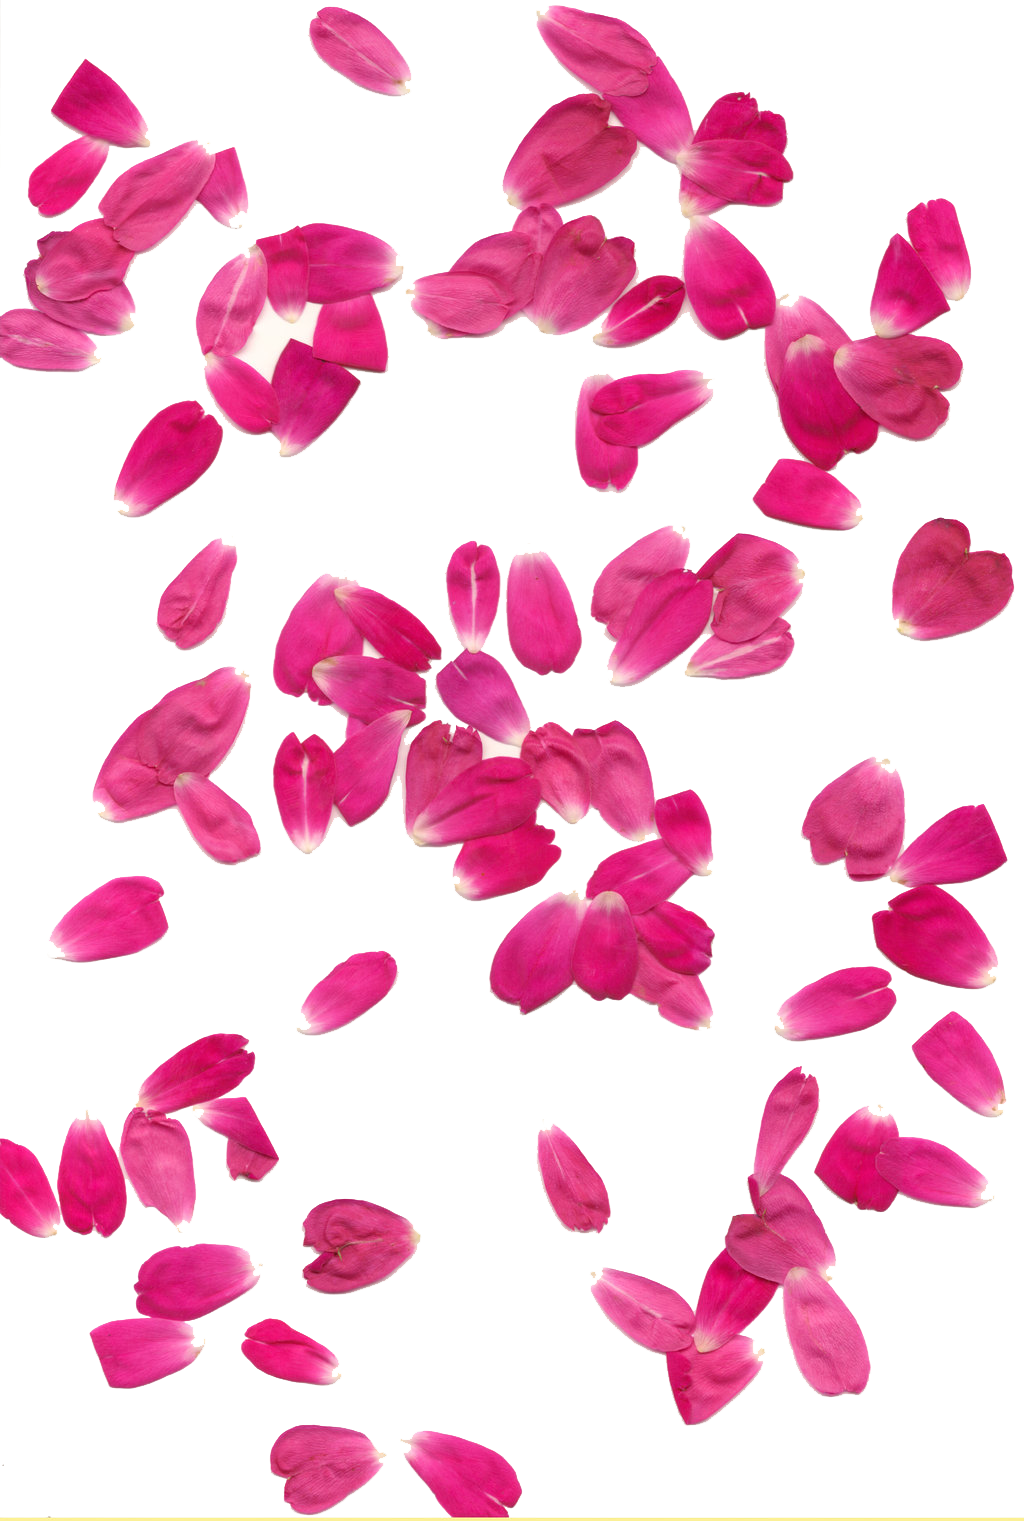 Download PNG image - Rose Petals Transparent Background 